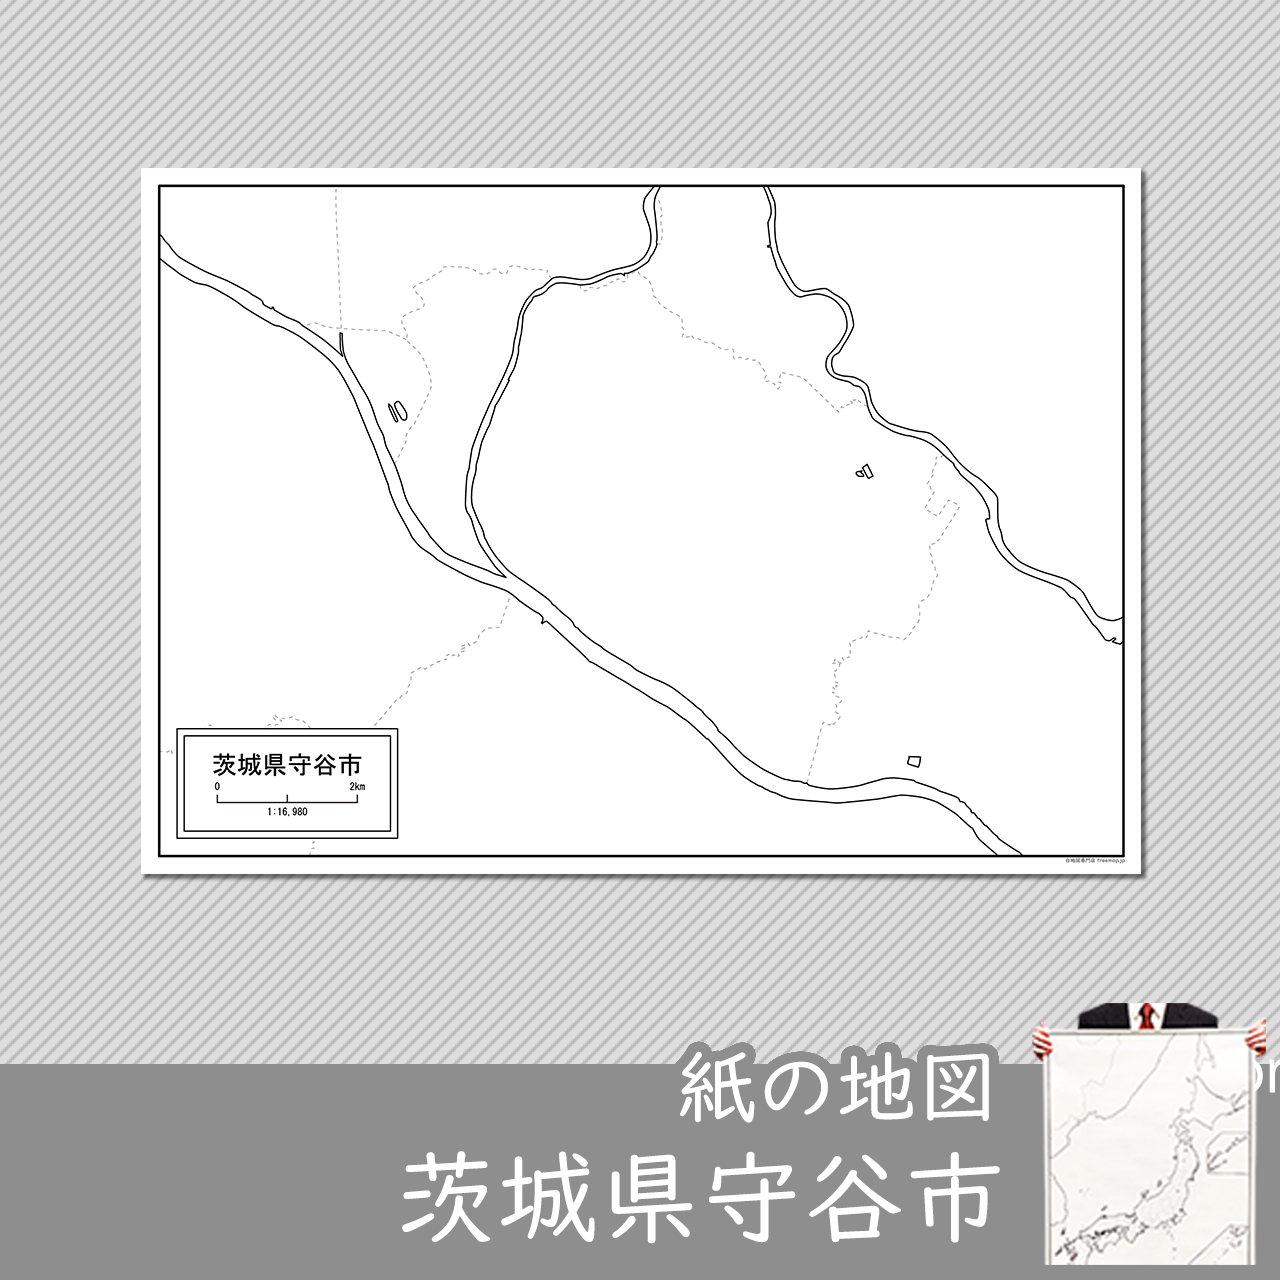 守谷市の紙の白地図のサムネイル